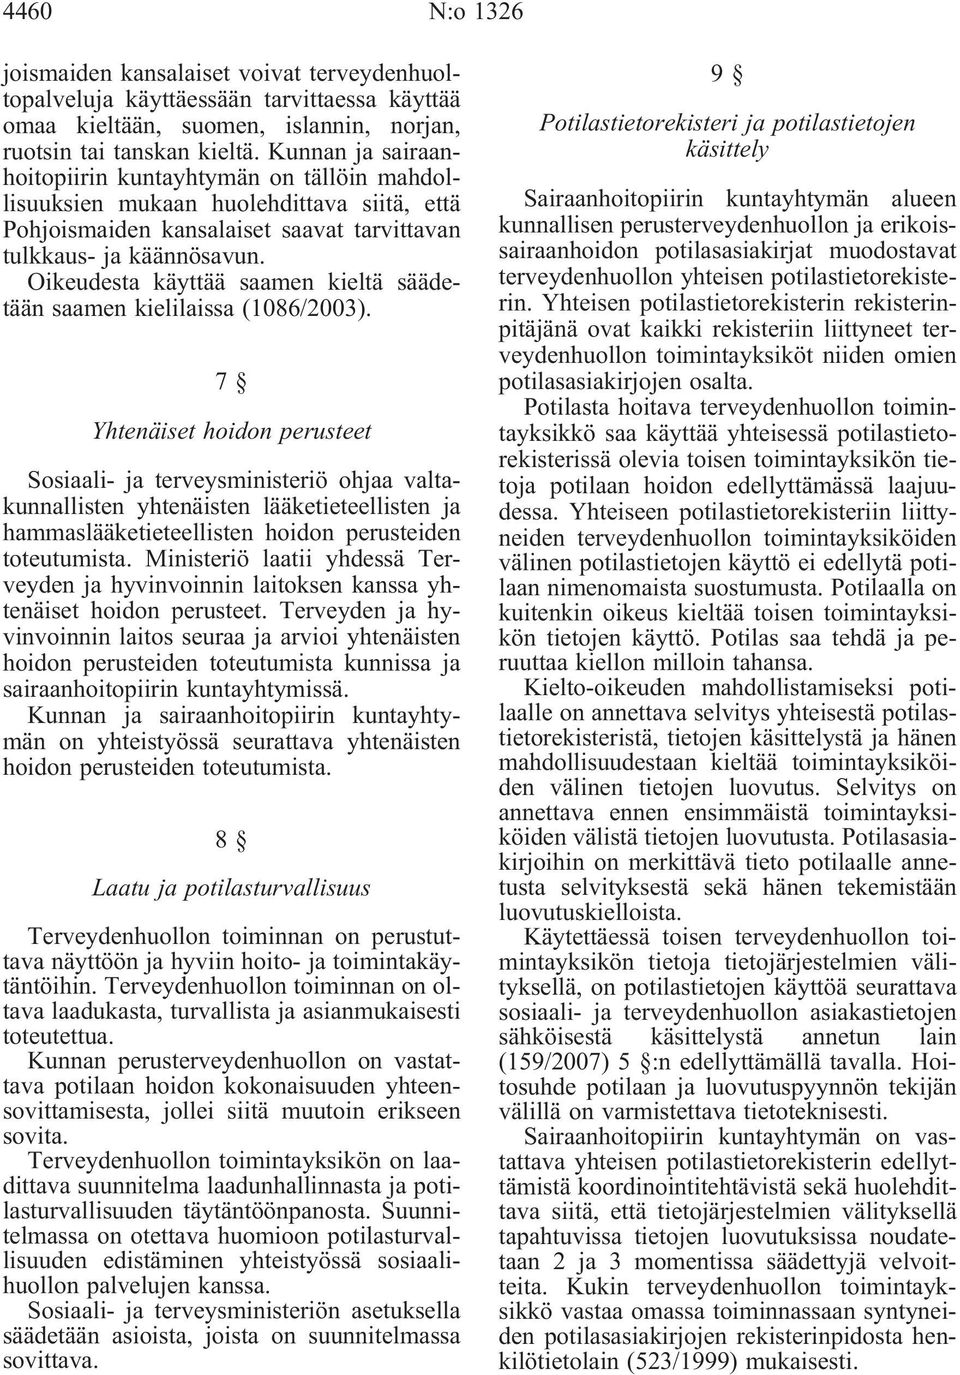 Oikeudesta käyttää saamen kieltä säädetään saamen kielilaissa (1086/2003).